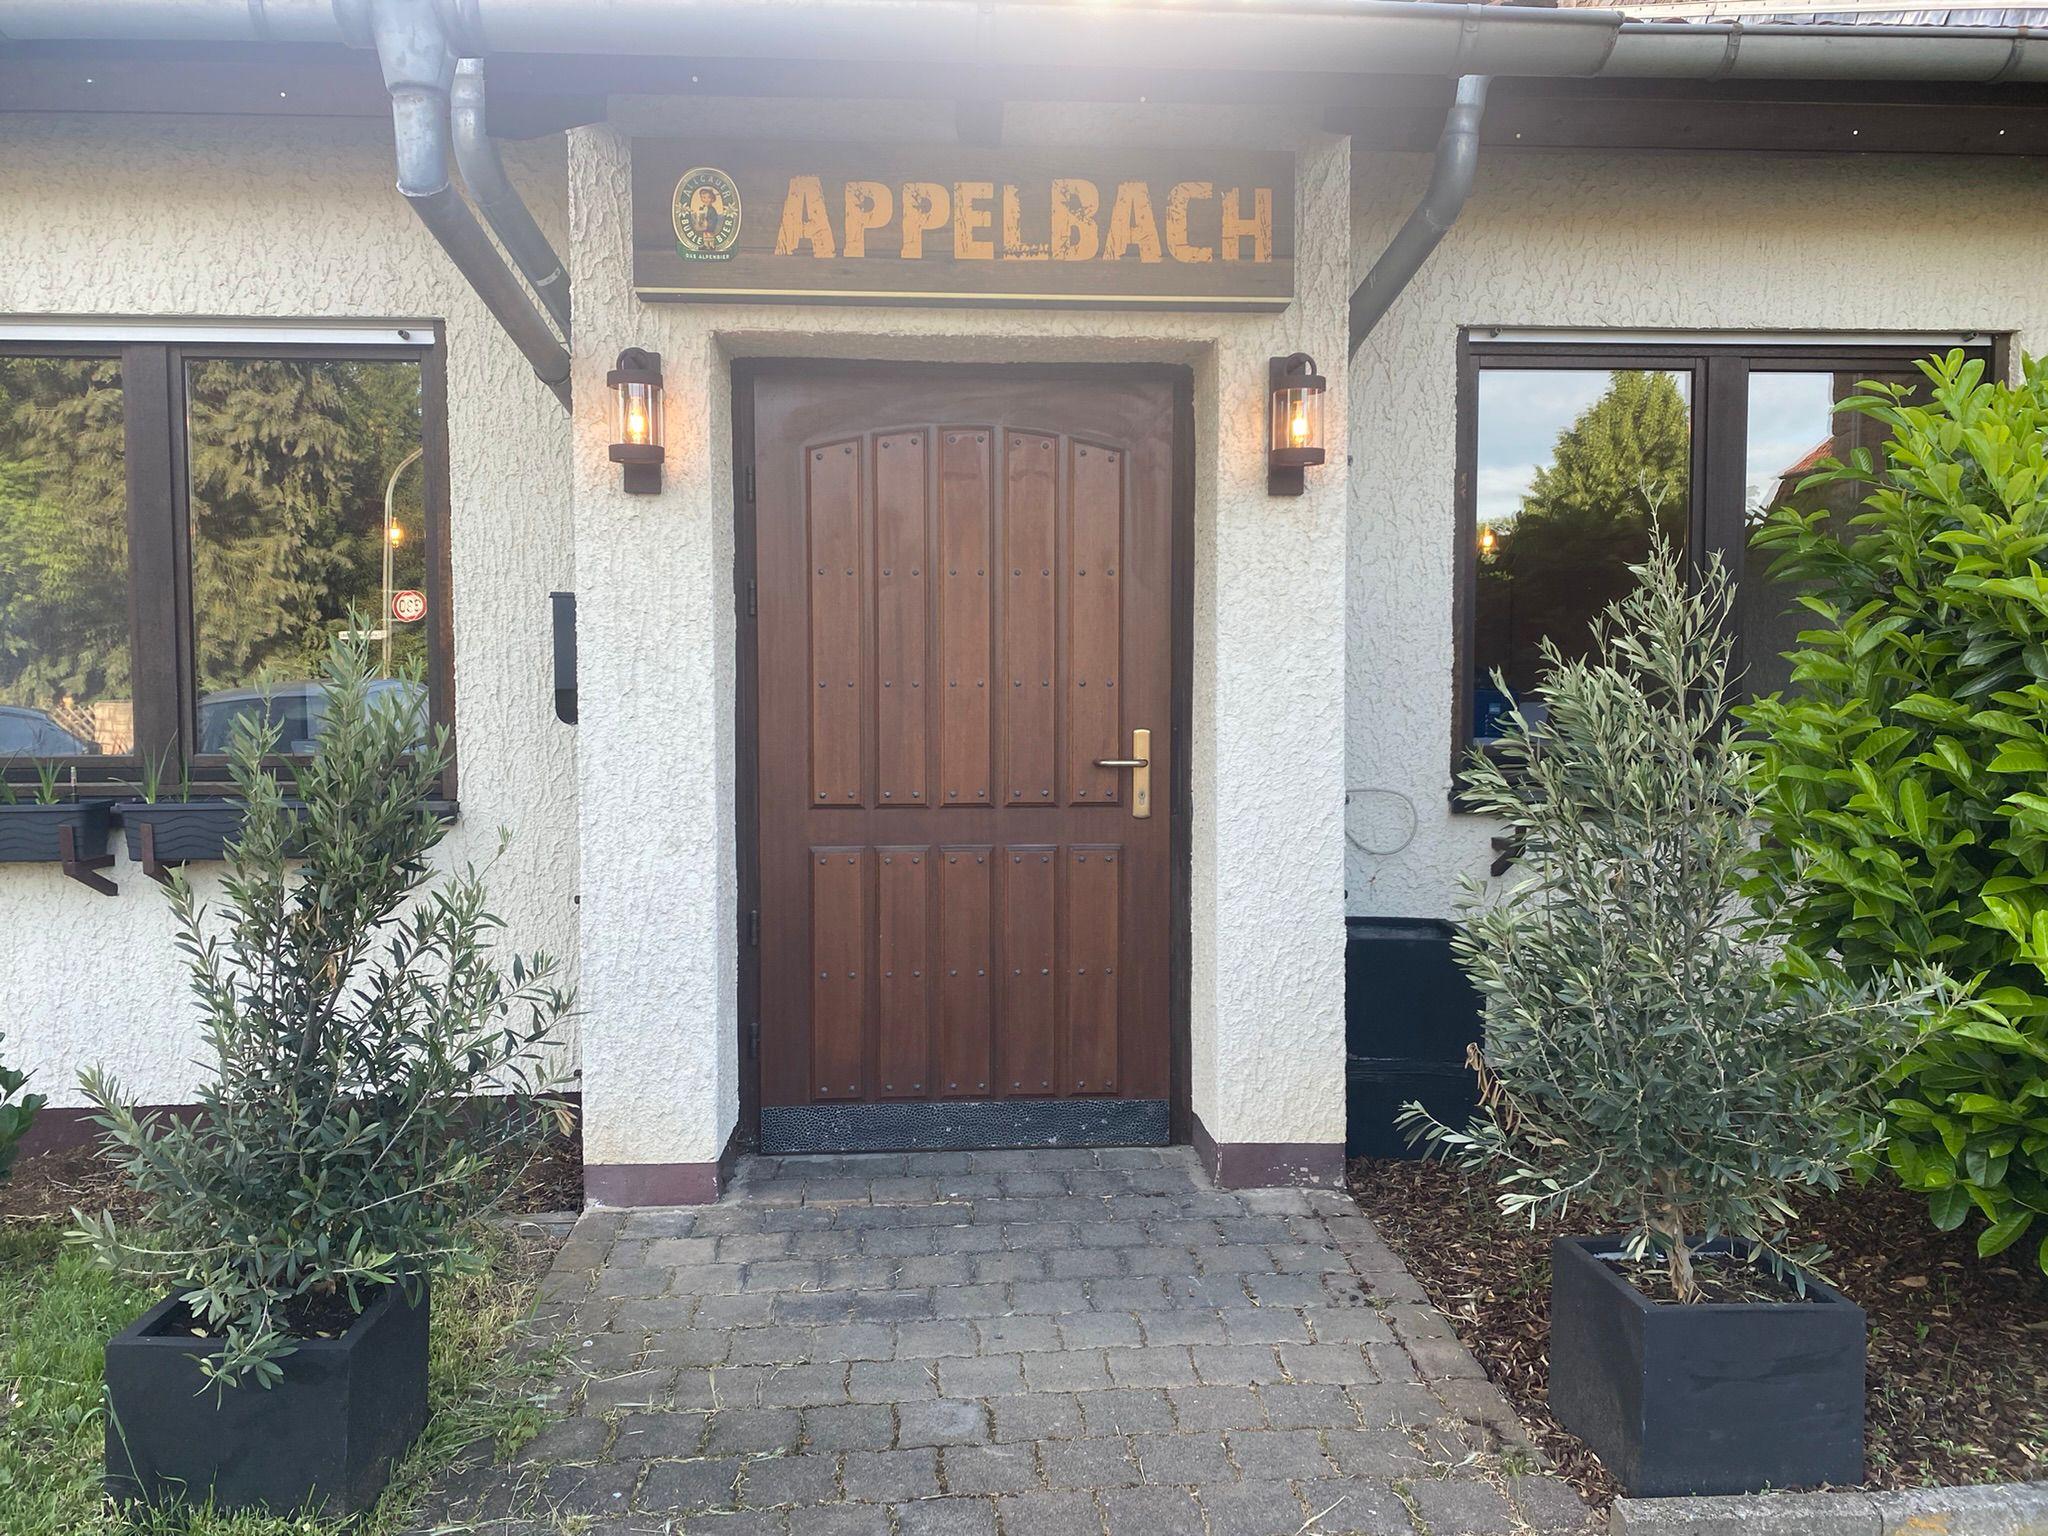 Appelbach Lokal